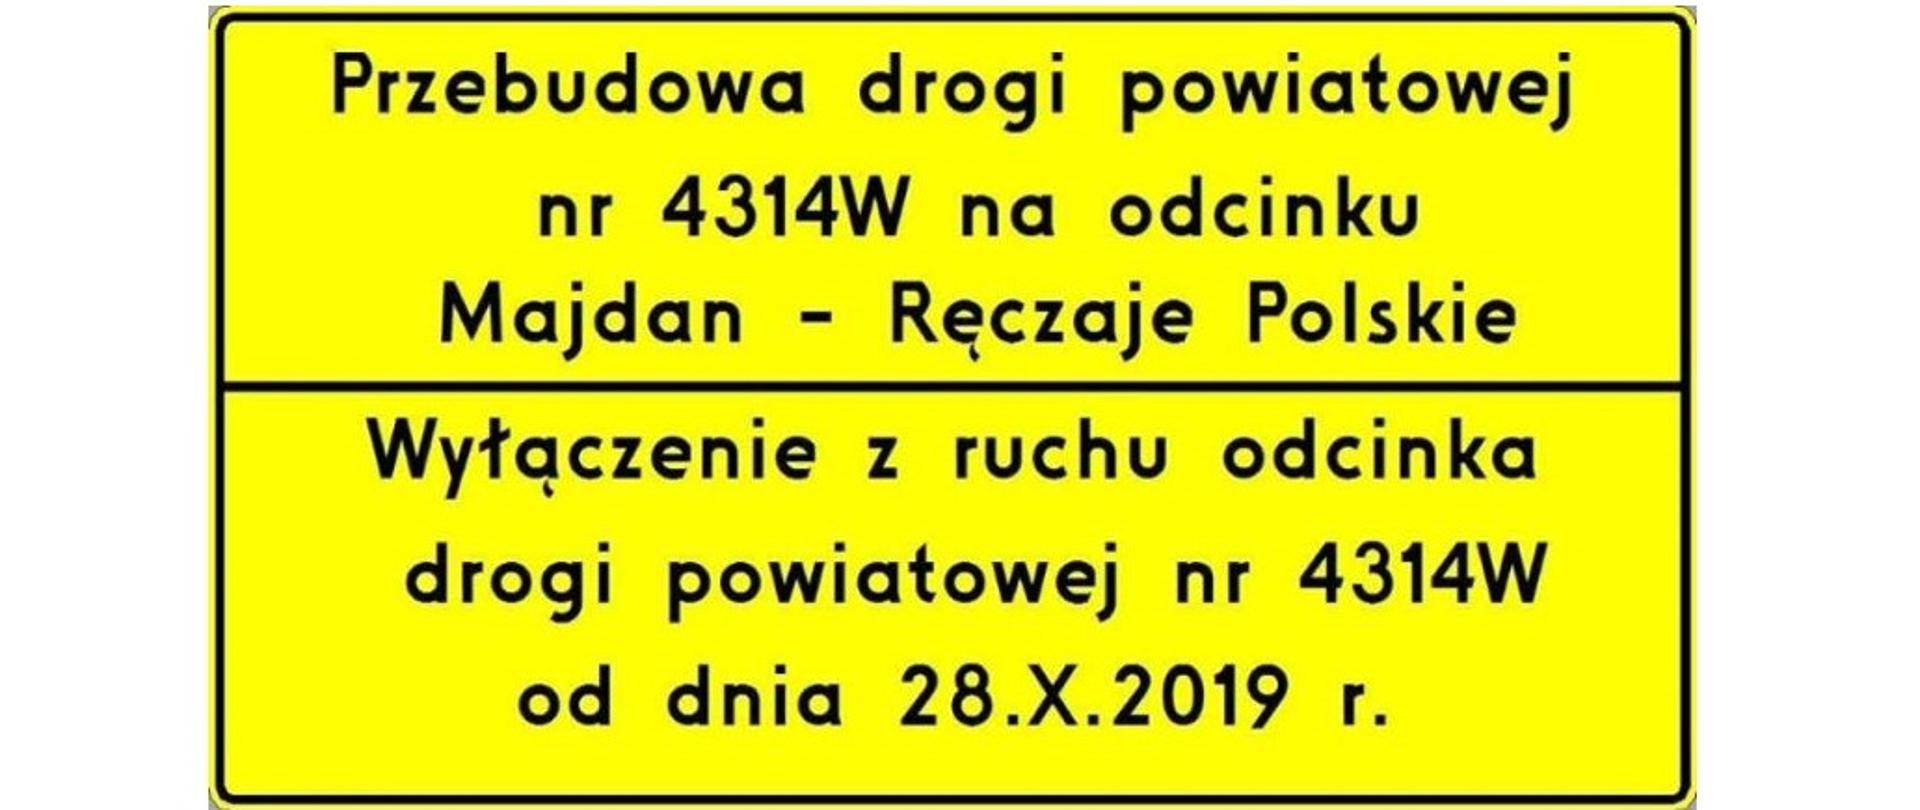 Przebudowa drogi powiatowej nr 4314W na odcinku Majdan-Ręczaje Polskie.